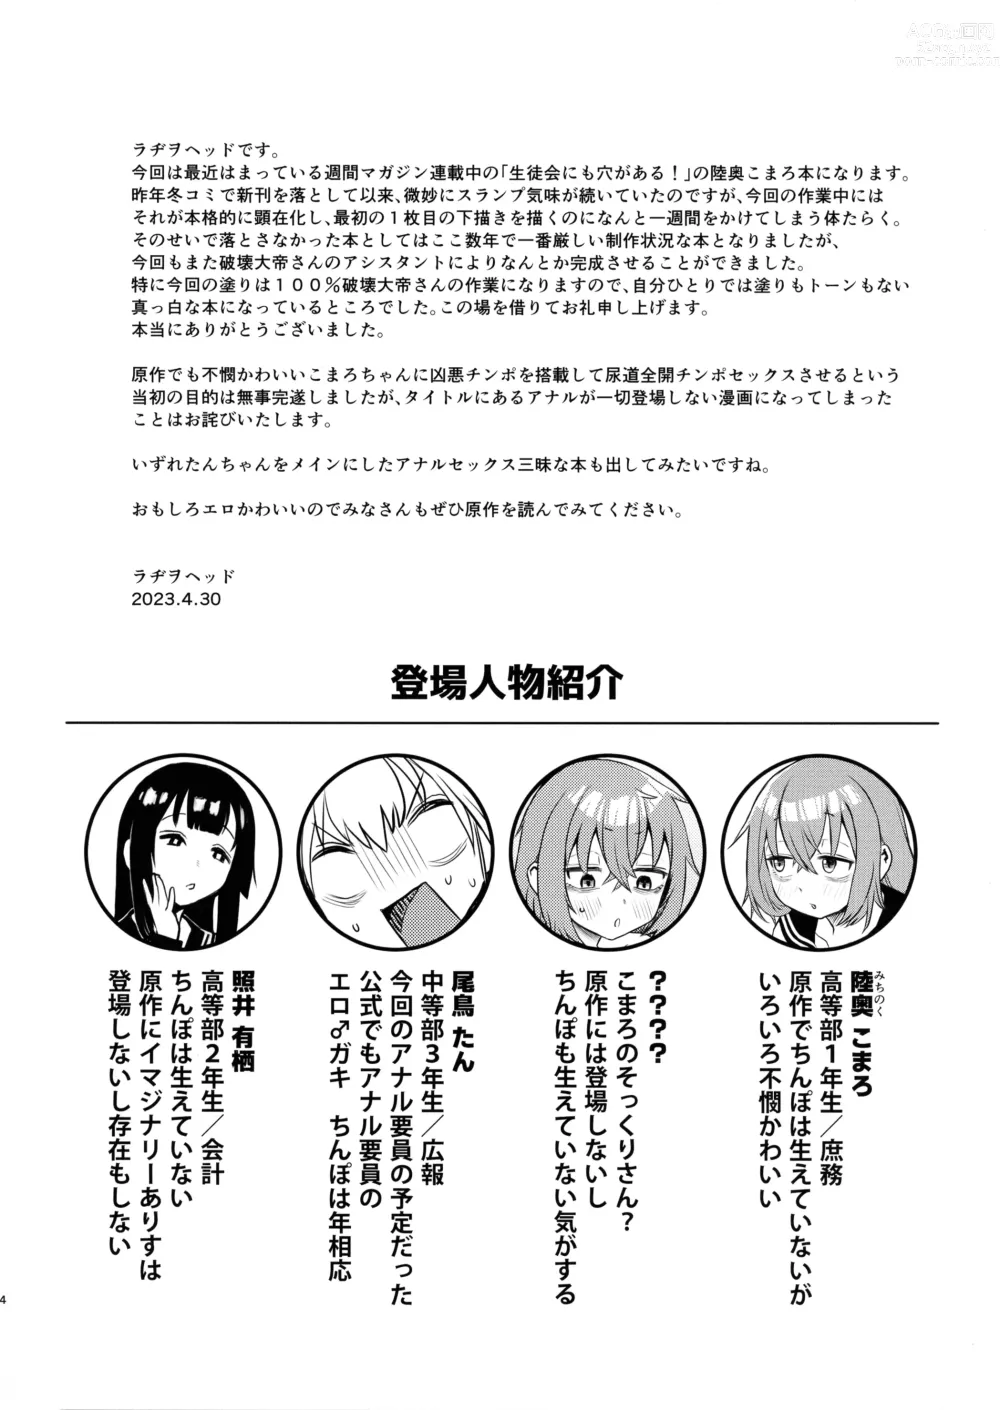 Page 3 of doujinshi Seito-kai ni mo sao anaru!